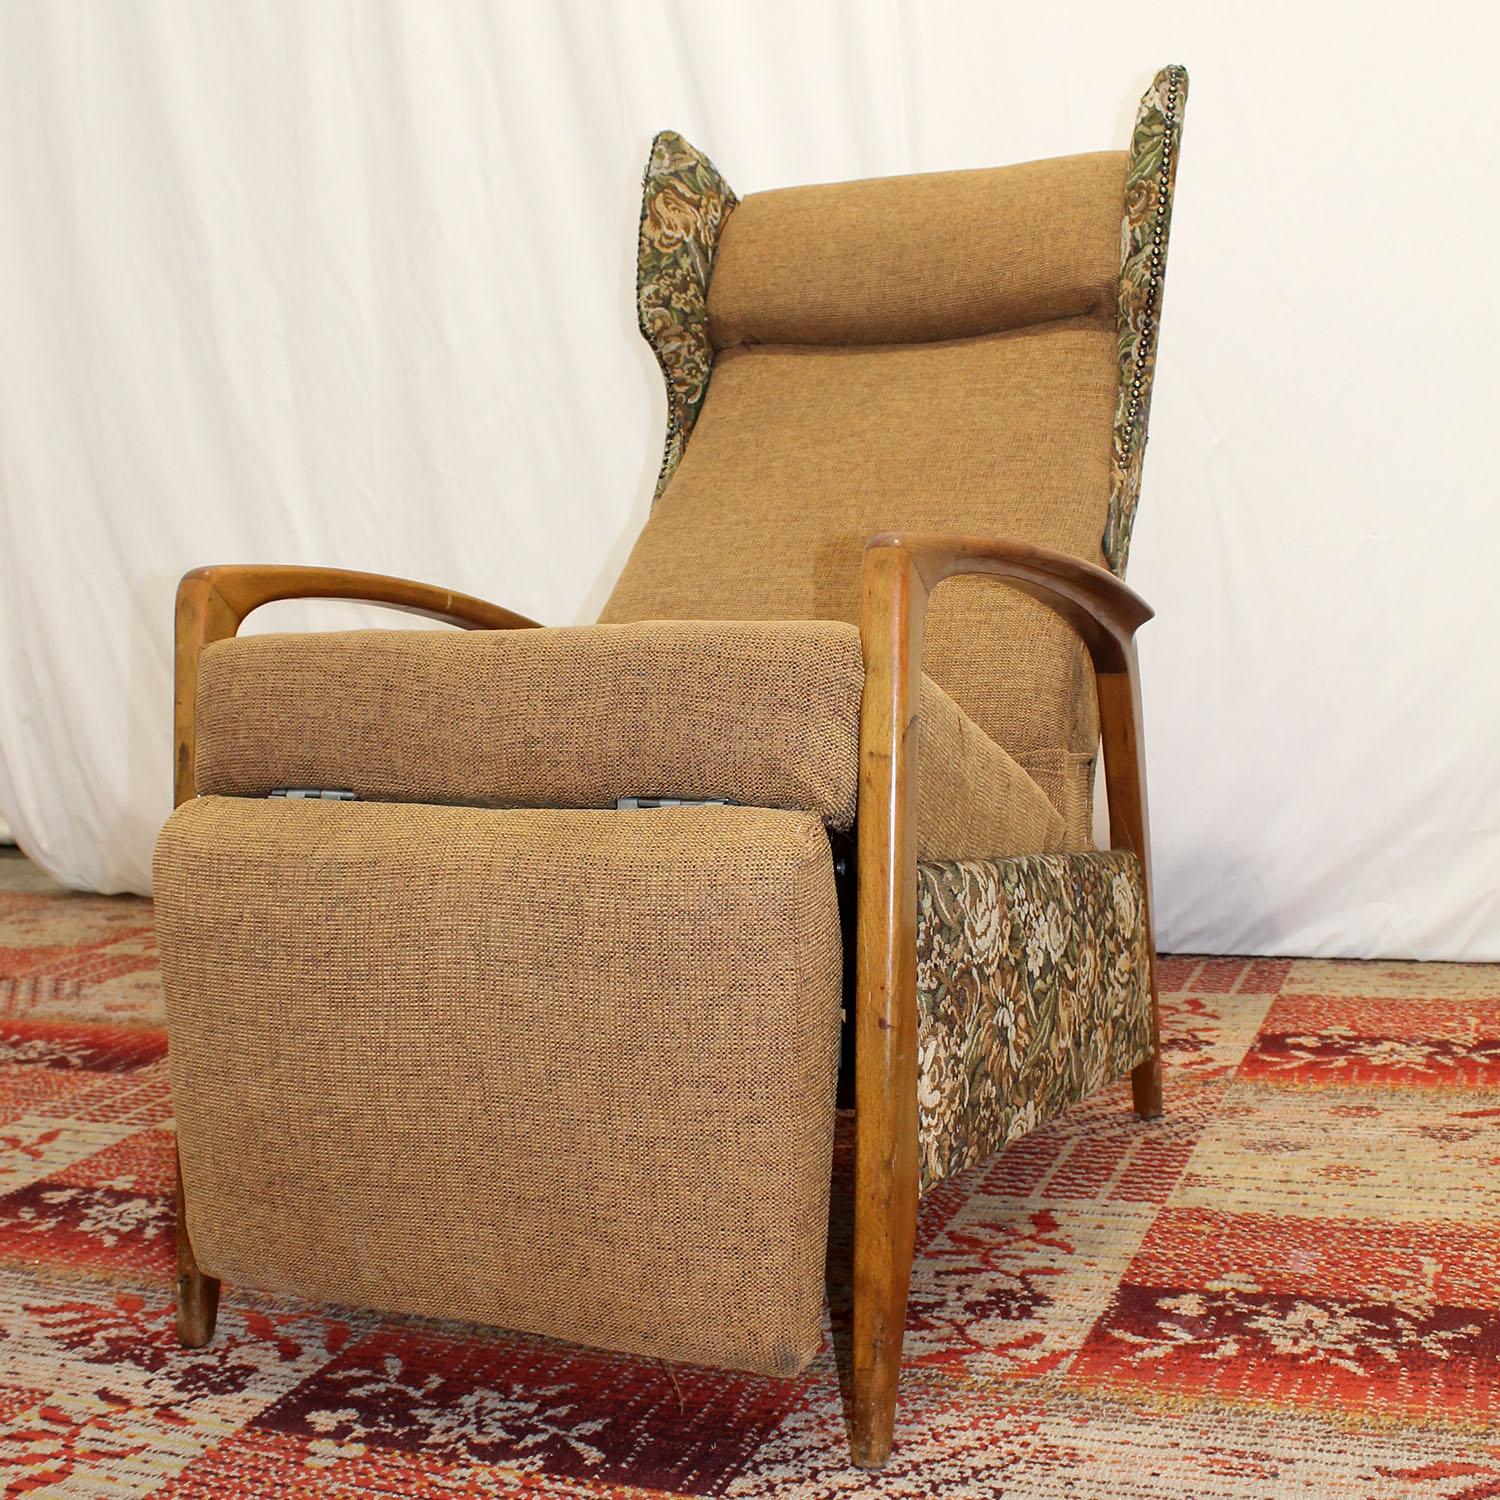 Der Sessel wurde in den 1970er Jahren in Deutschland hergestellt. Skandinavische Design-Inspiration ist hier offensichtlich.

Der Stuhl ist mit Stoff gepolstert und die Armlehnen sind aus Buchenholz gefertigt. Der Stuhl ist sehr bequem und verfügt